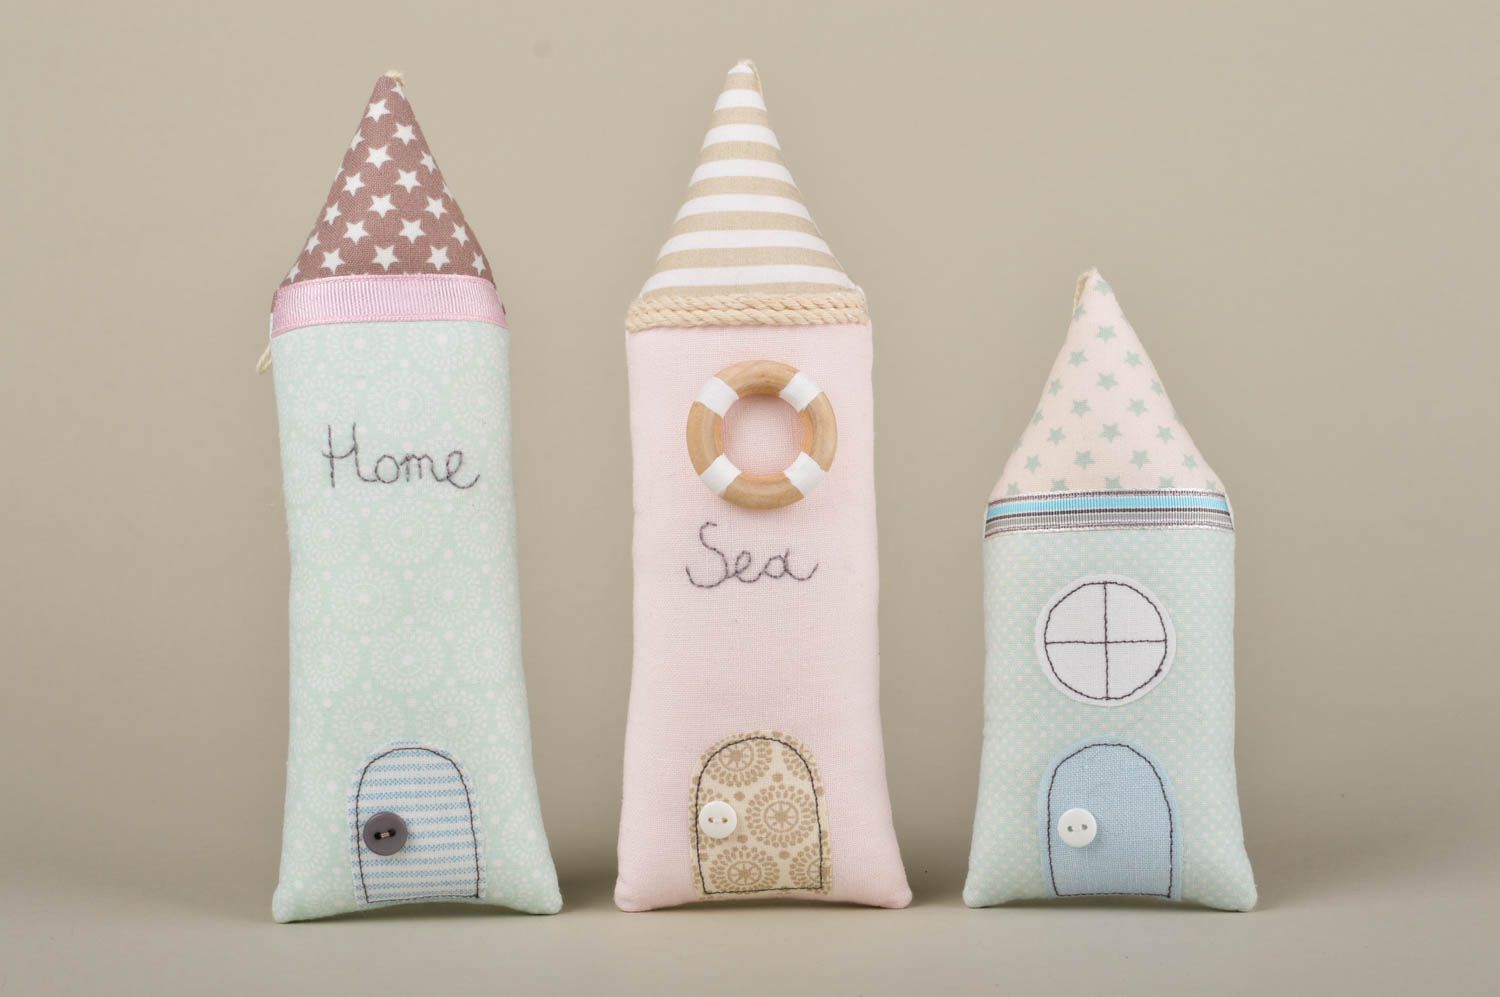 Мягкие игрушки хэнд мэйд декор для дома мягкие подвески в виде домиков 3 штуки фото 1